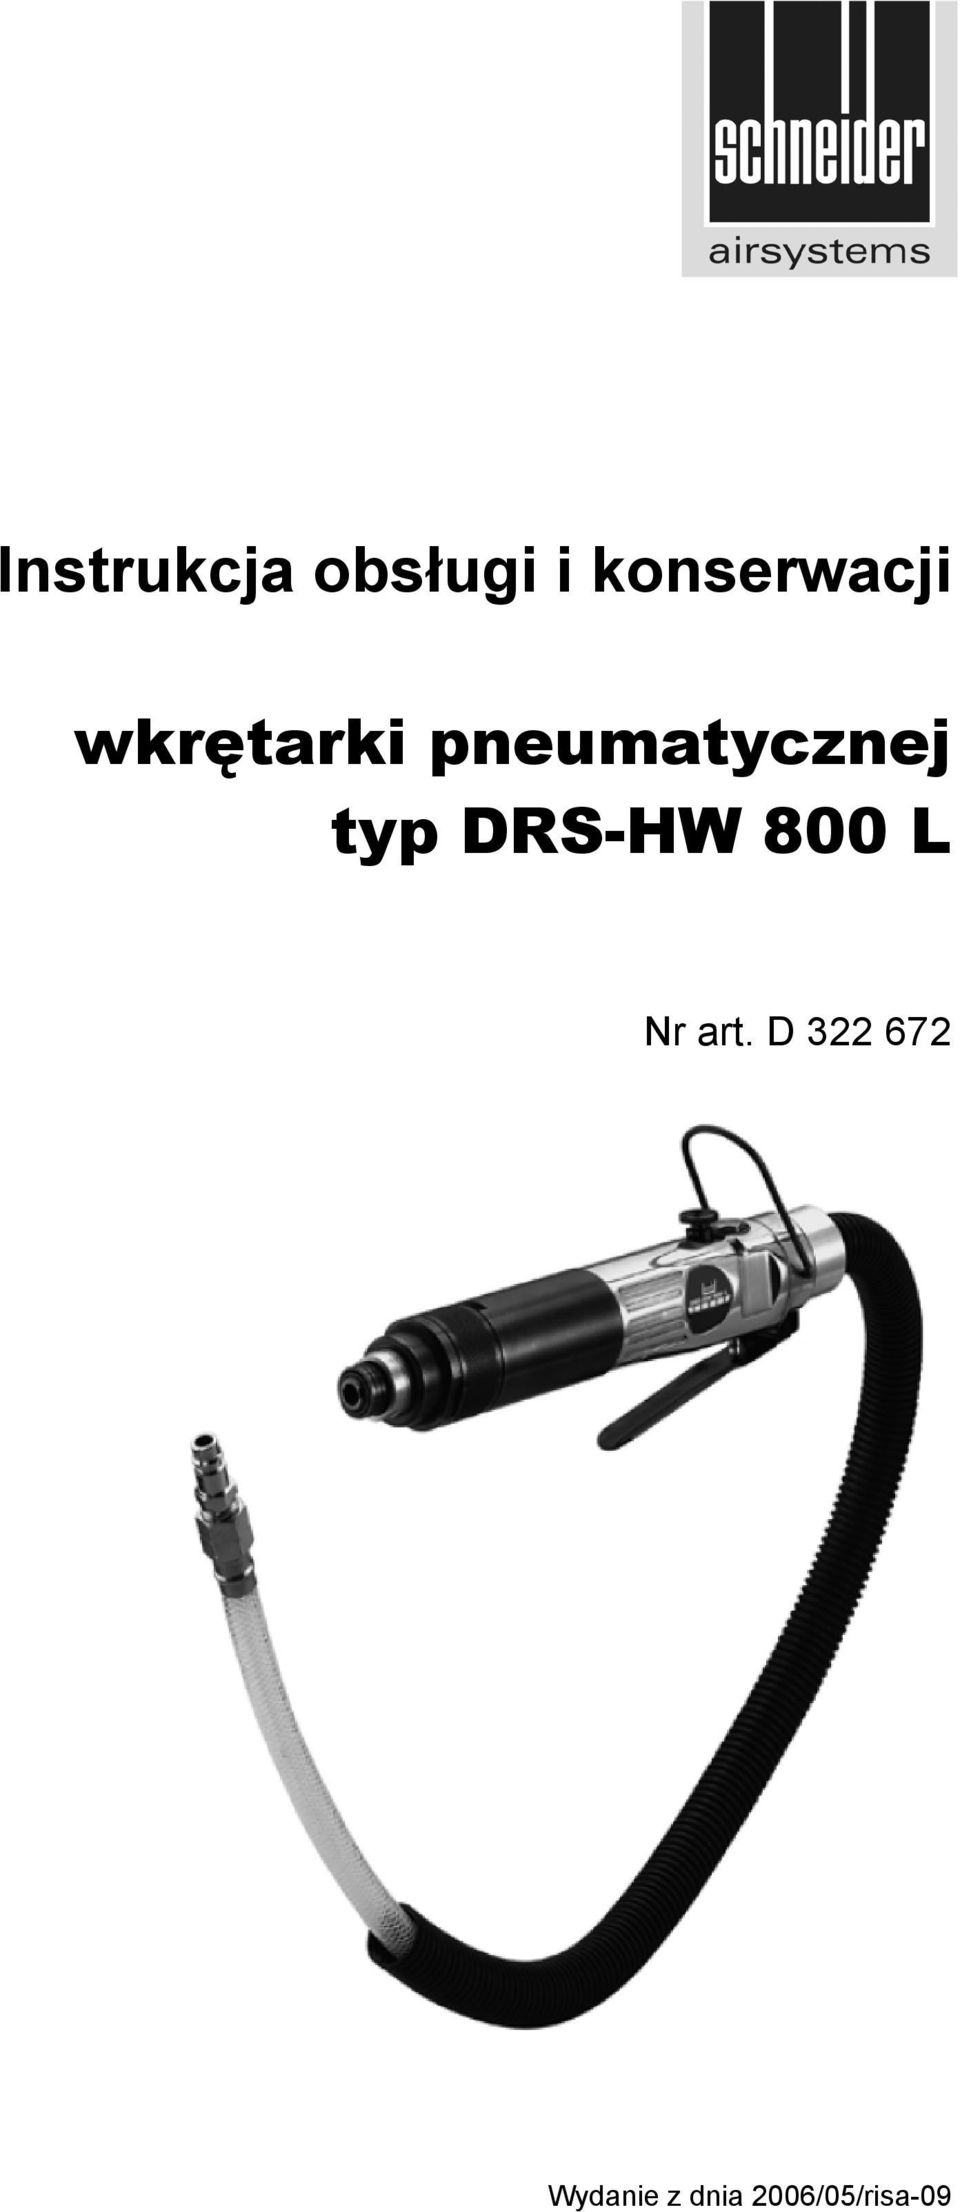 pneumatycznej typ DRS-HW 800 L